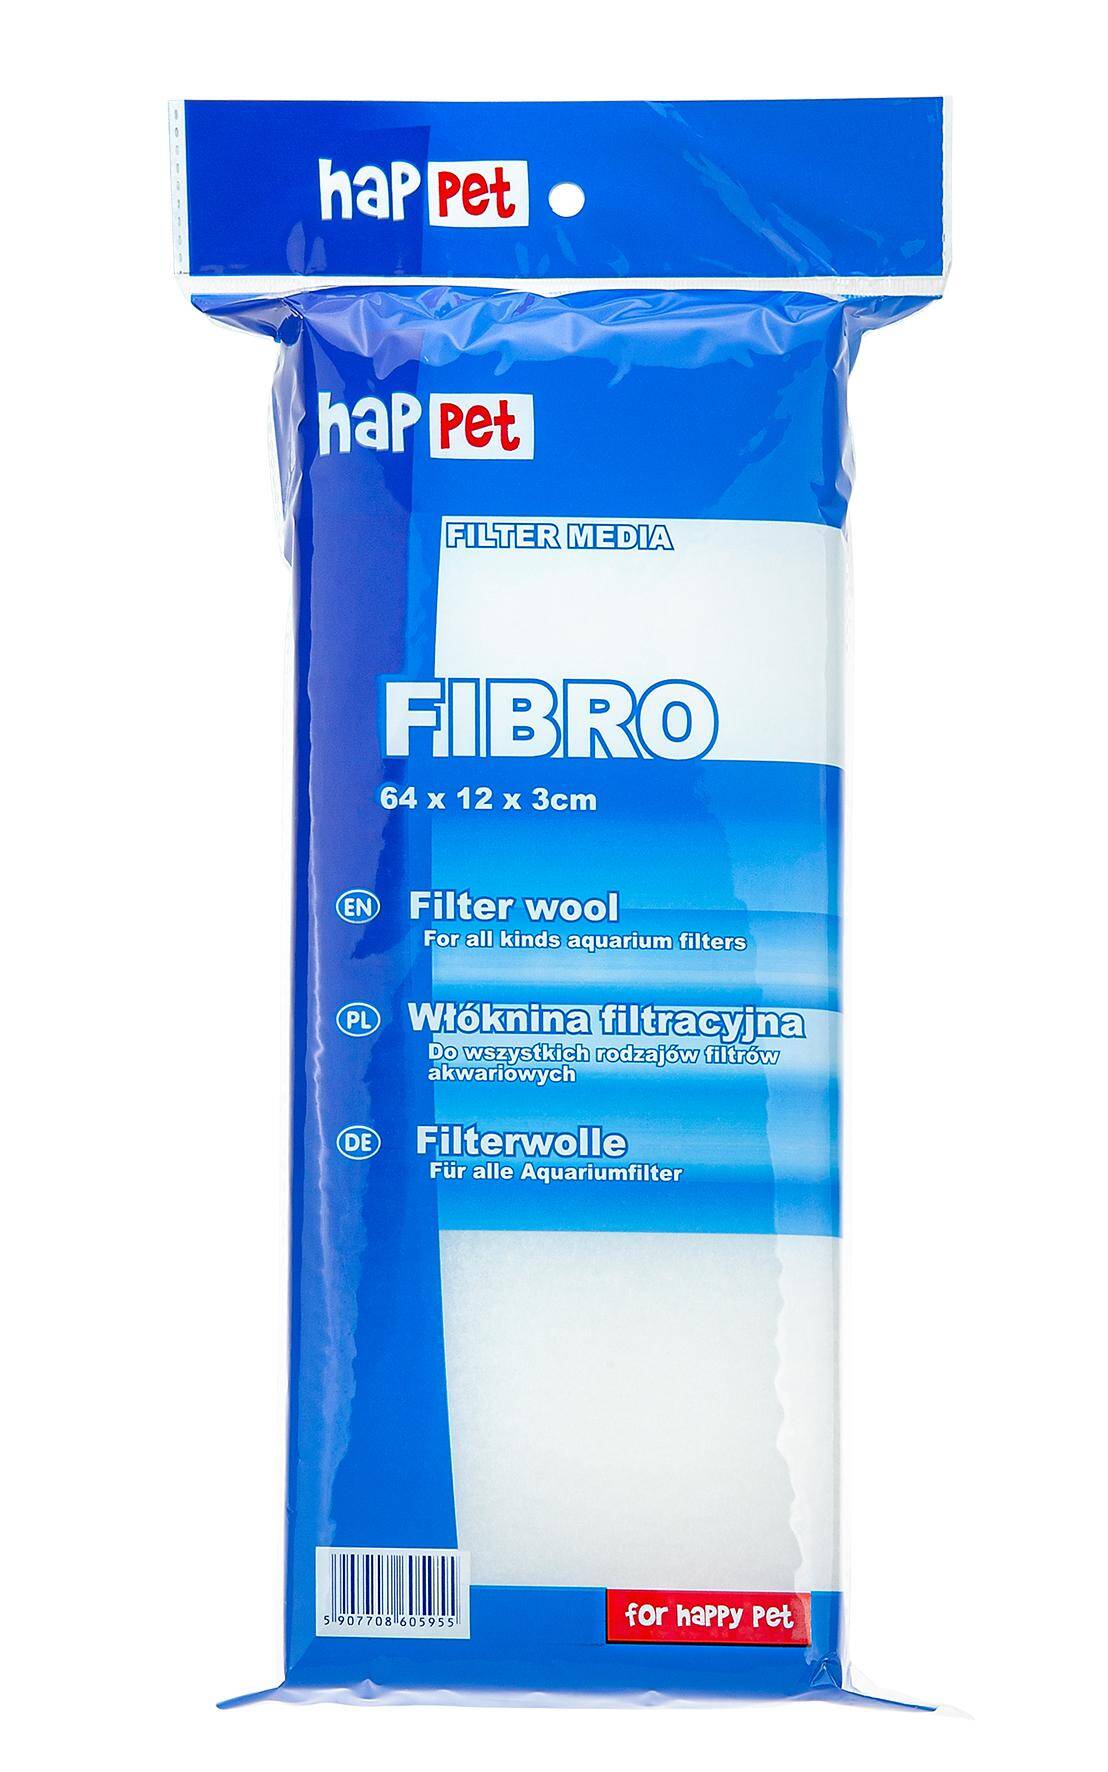 HAPPET Fibro Filter Media